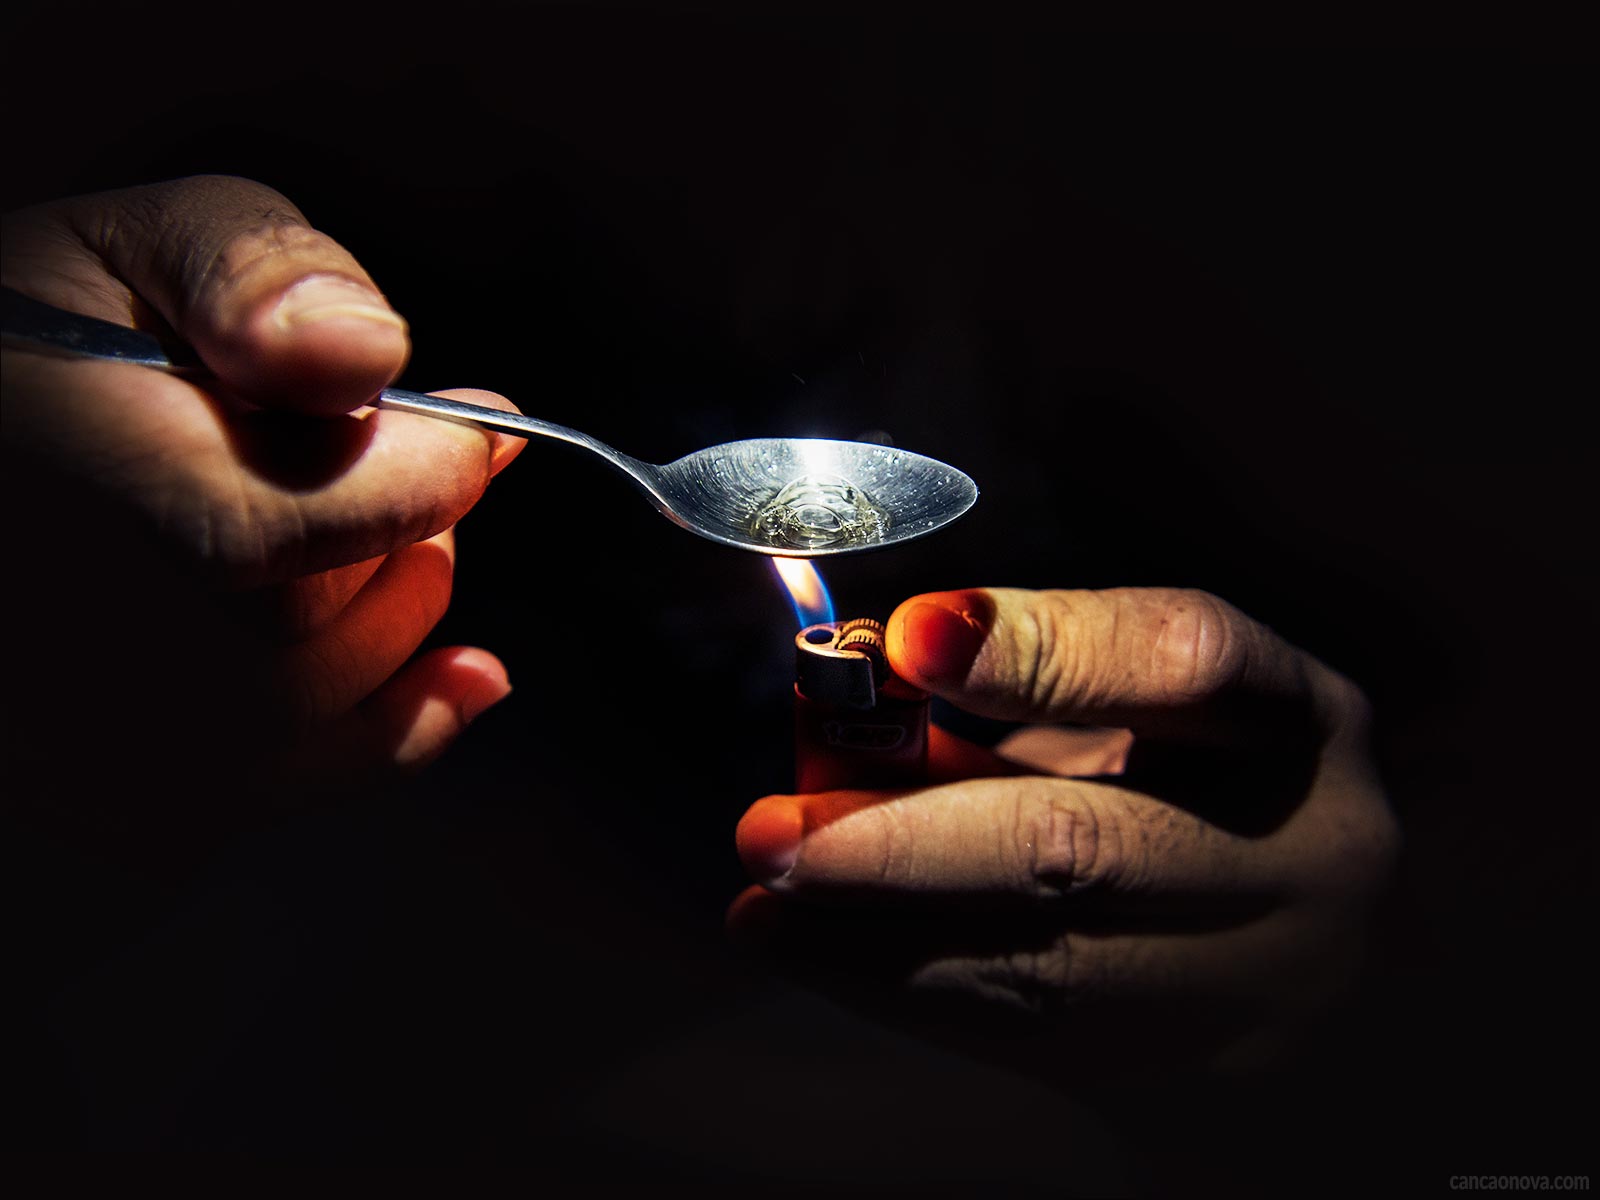 Como se livrar dos vícios trazidos pelo uso de drogas?